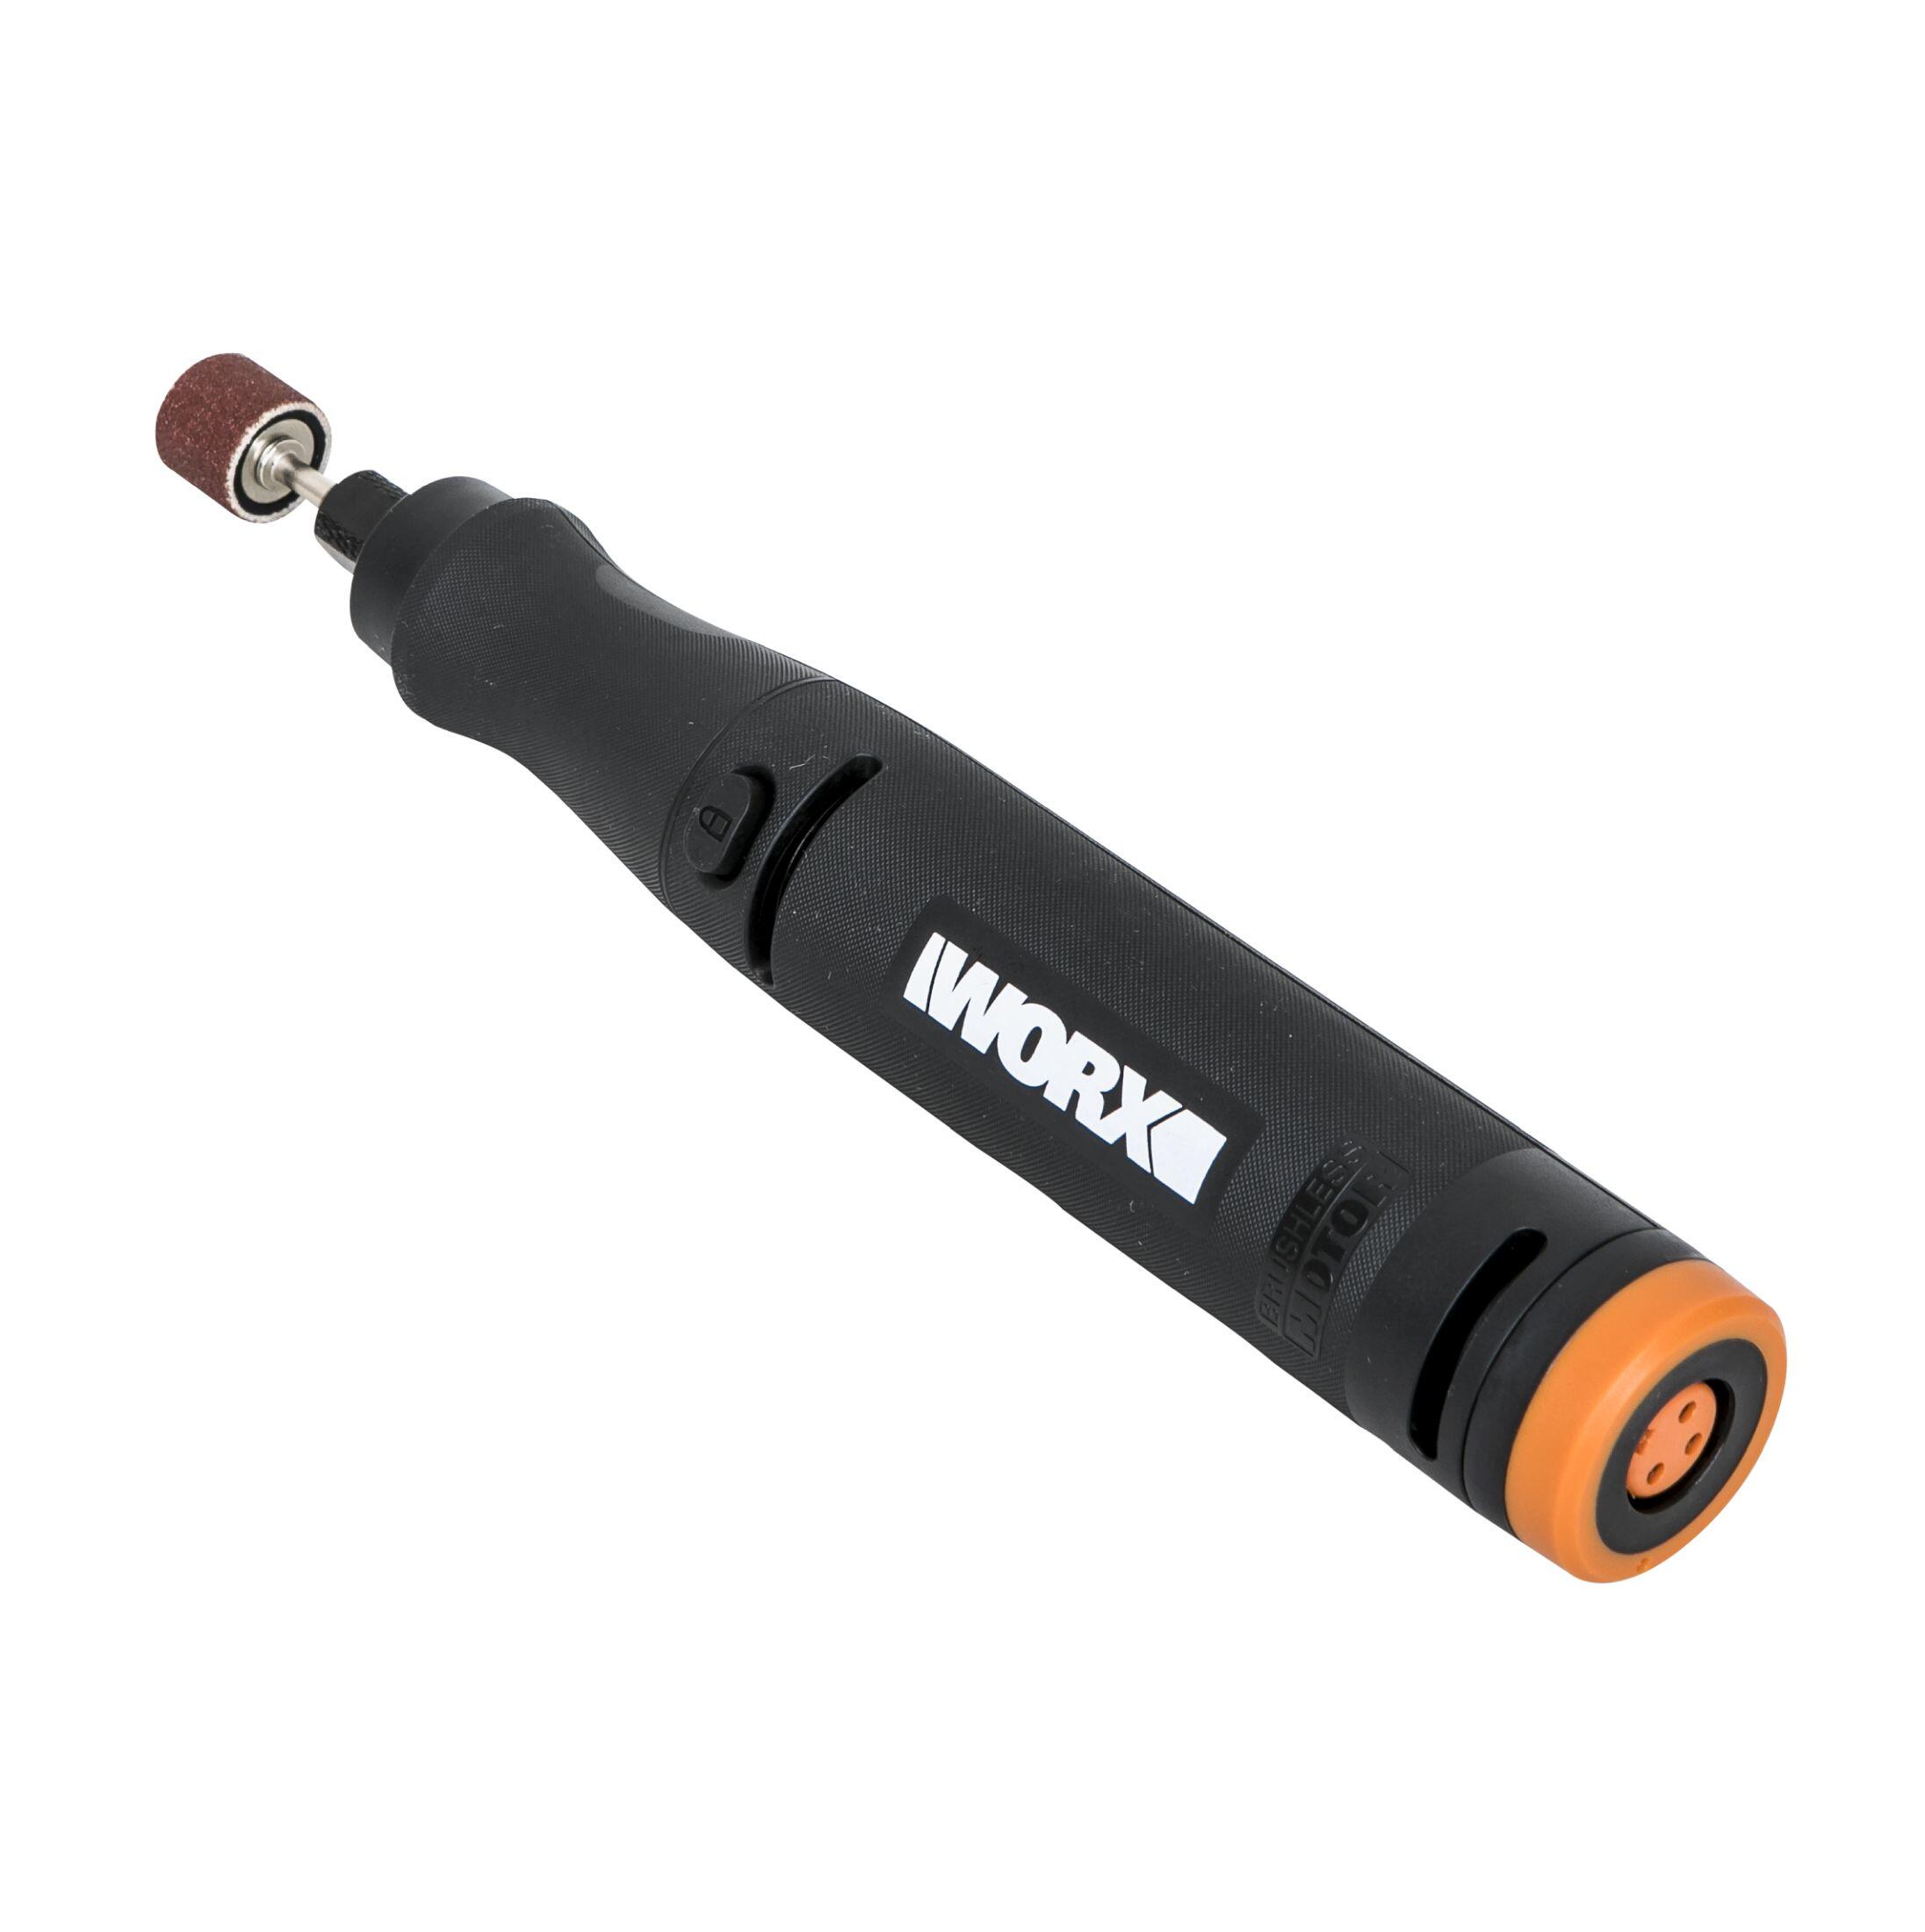 Worx mini herramienta rotativa makerx 20v sin batería ni cargador wx739.9